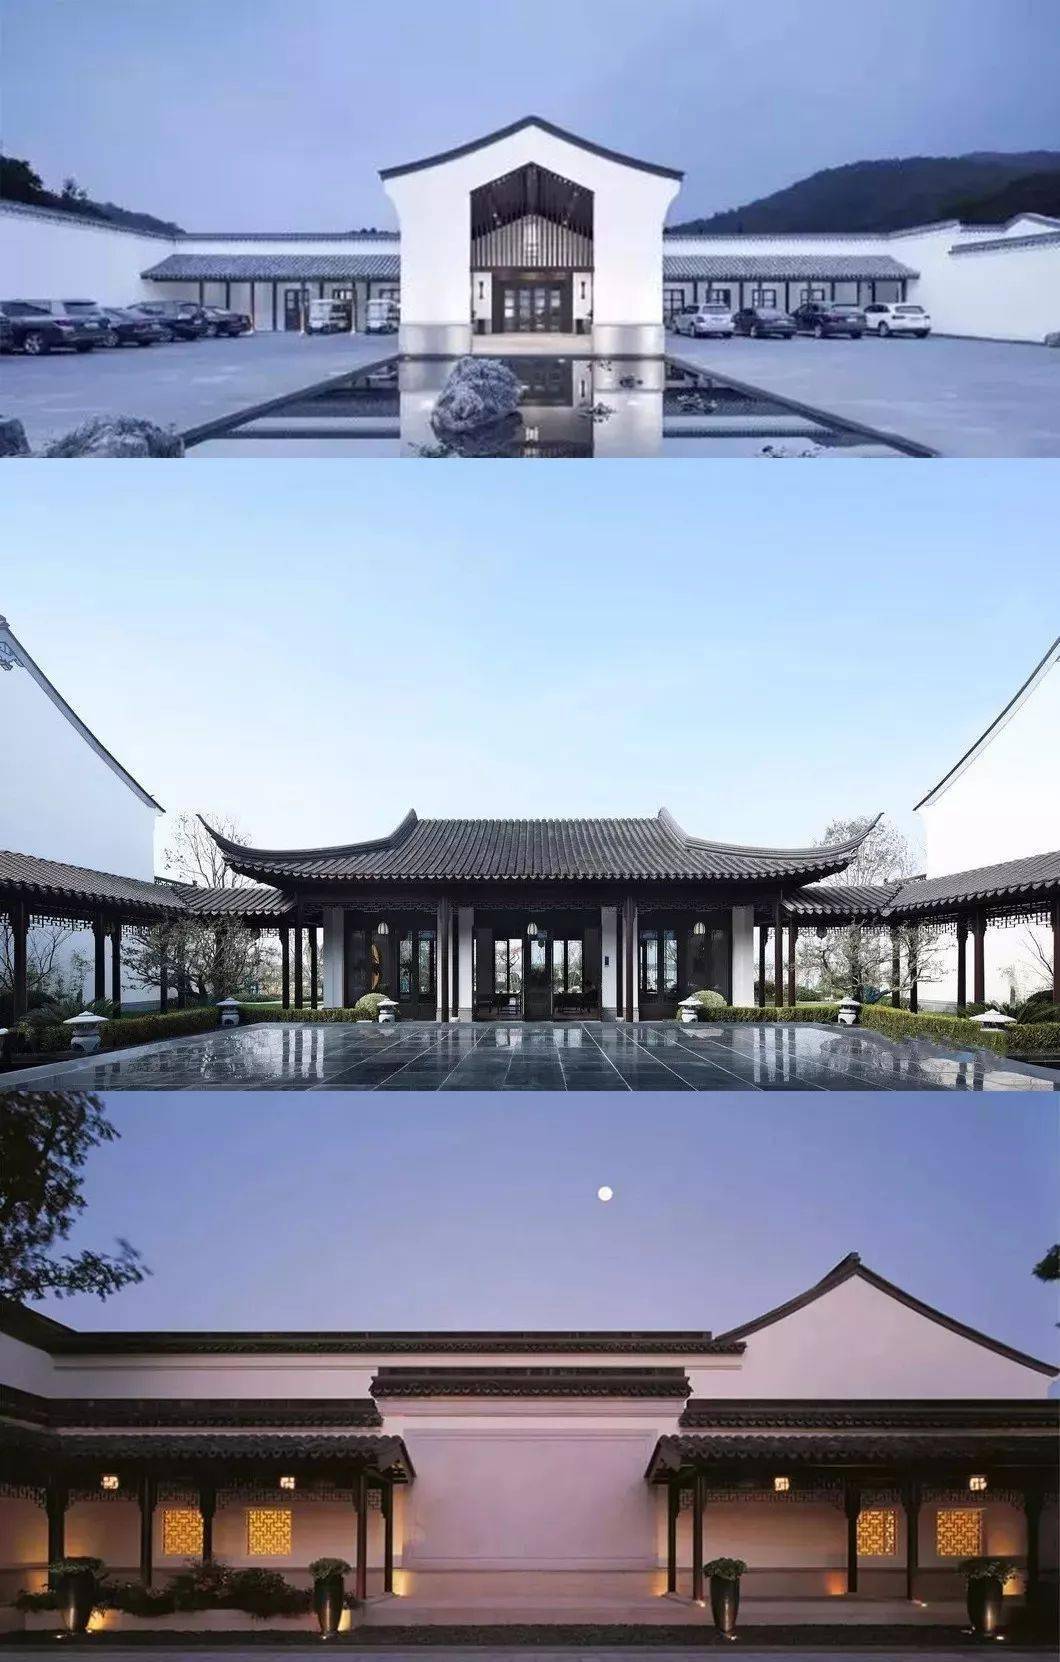 蕴含着平衡,稳定之美 【 中式建筑的对称之美 】 在中国传统建筑文化